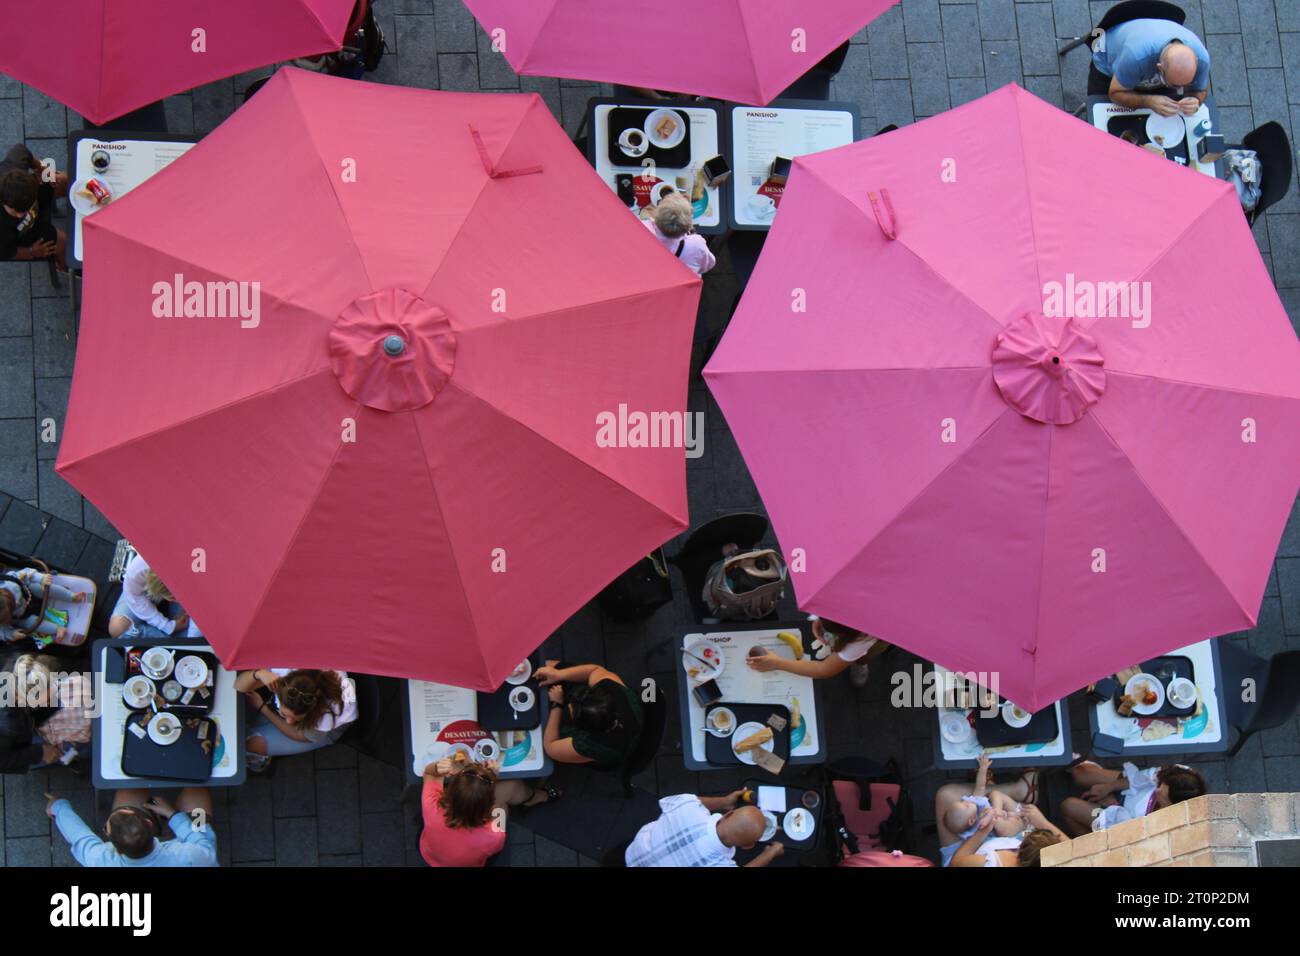 Straßencafé in Tarragona von oben gesehen mit großen rosa Regenschirmen Stockfoto